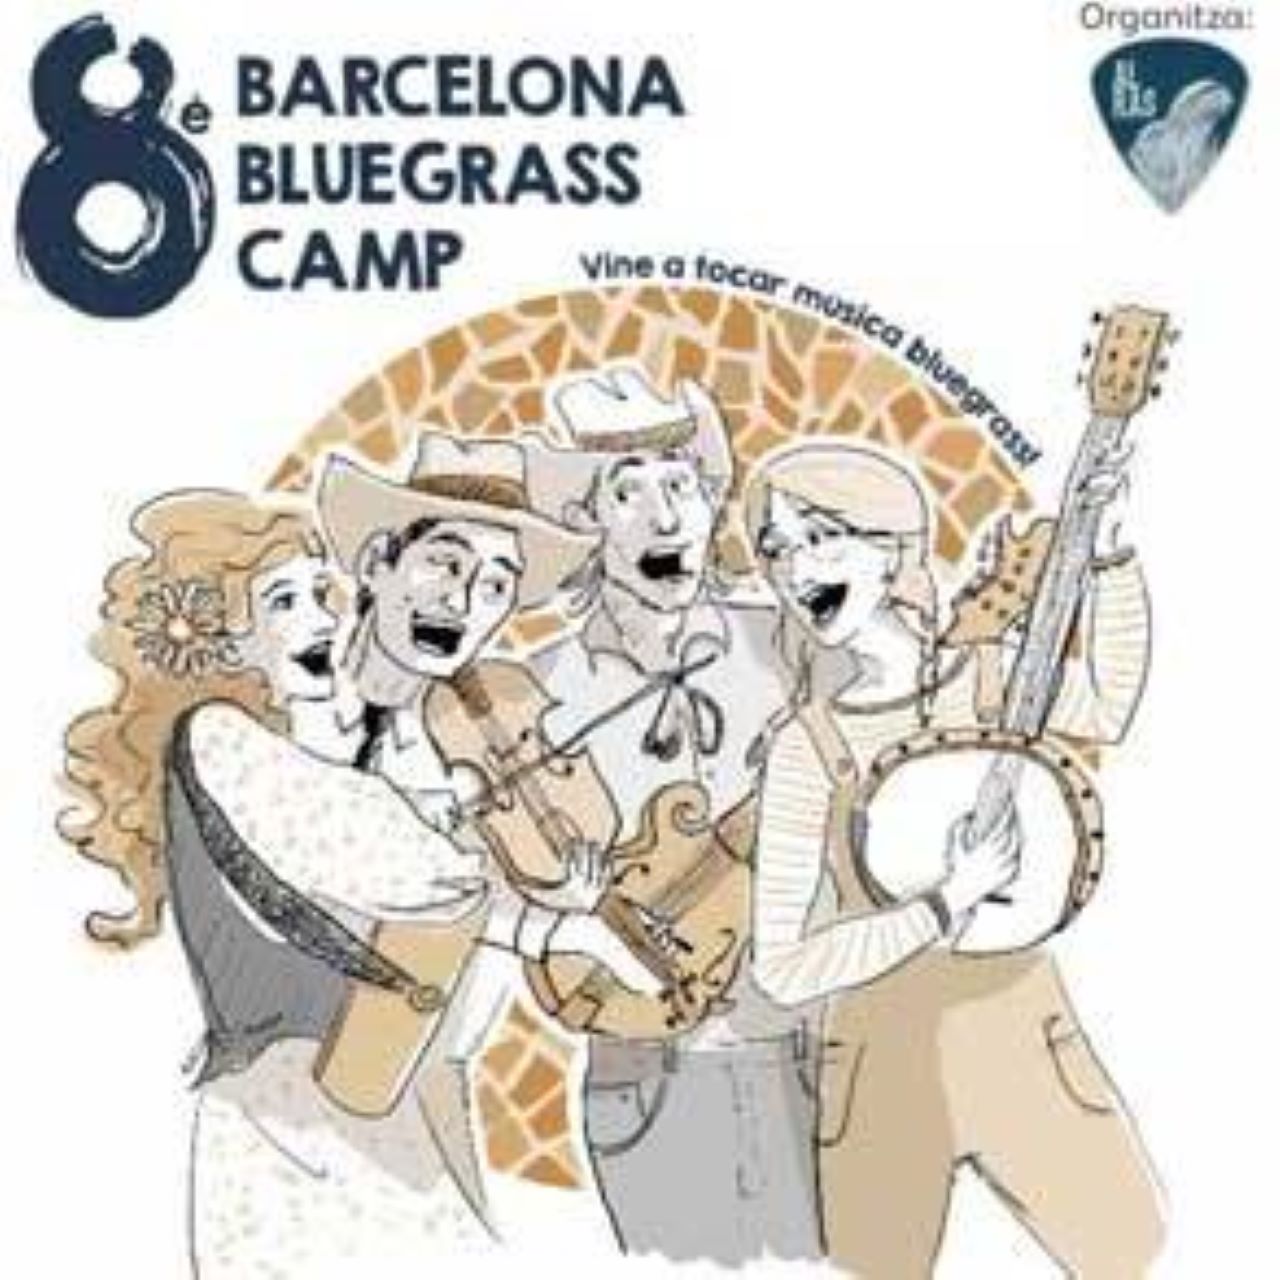 Barcelona Bluegrass Camp